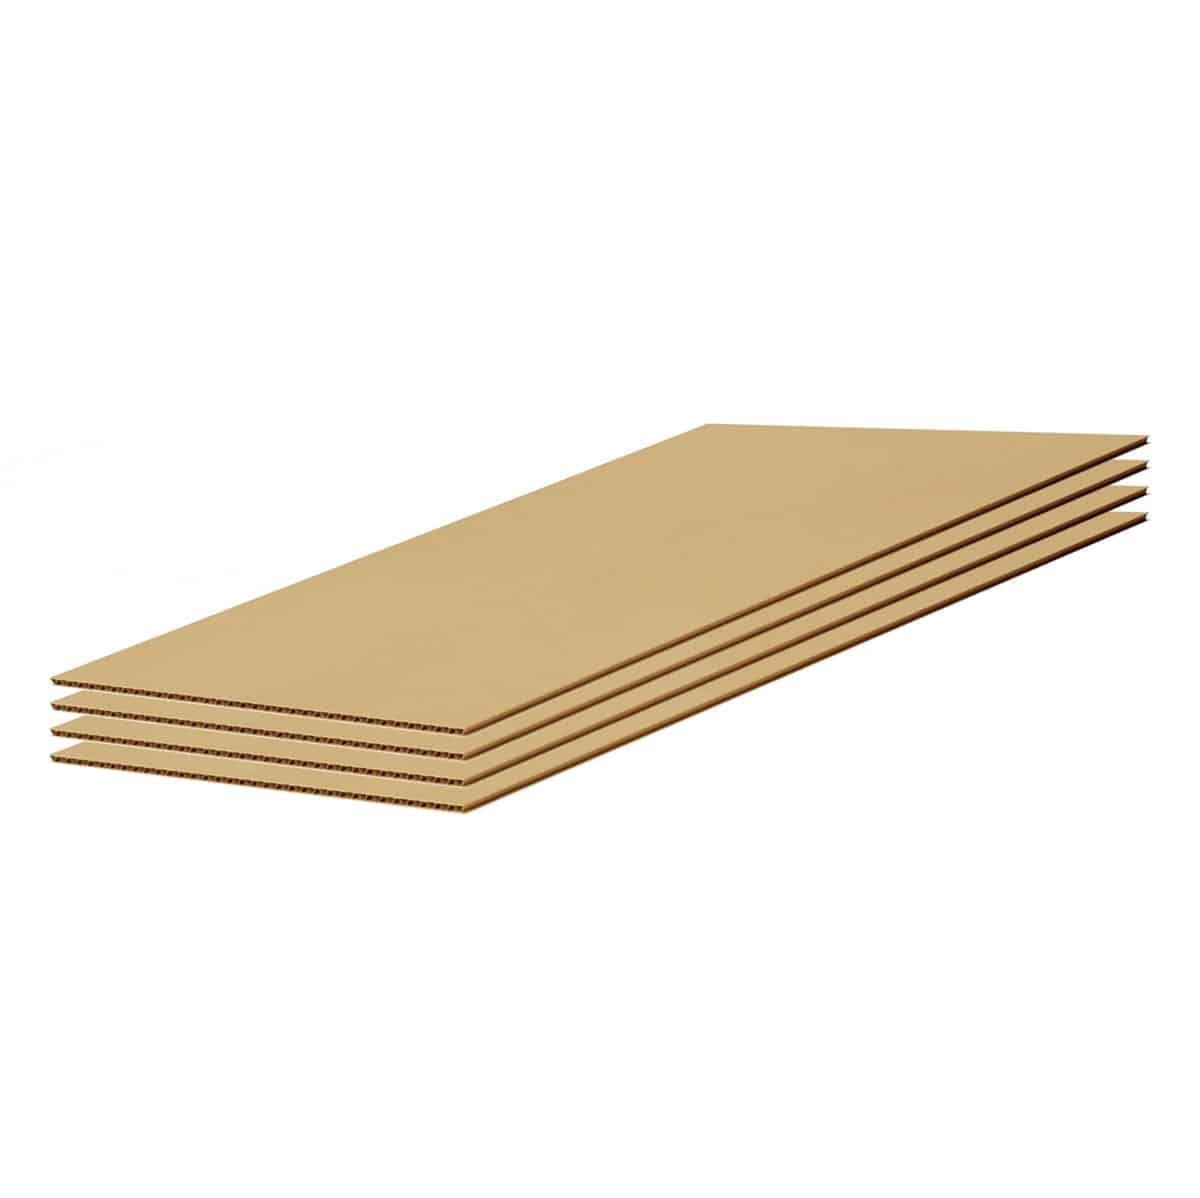 Cardboard Sheets, Bulk Corrugated Cardboard Sheet